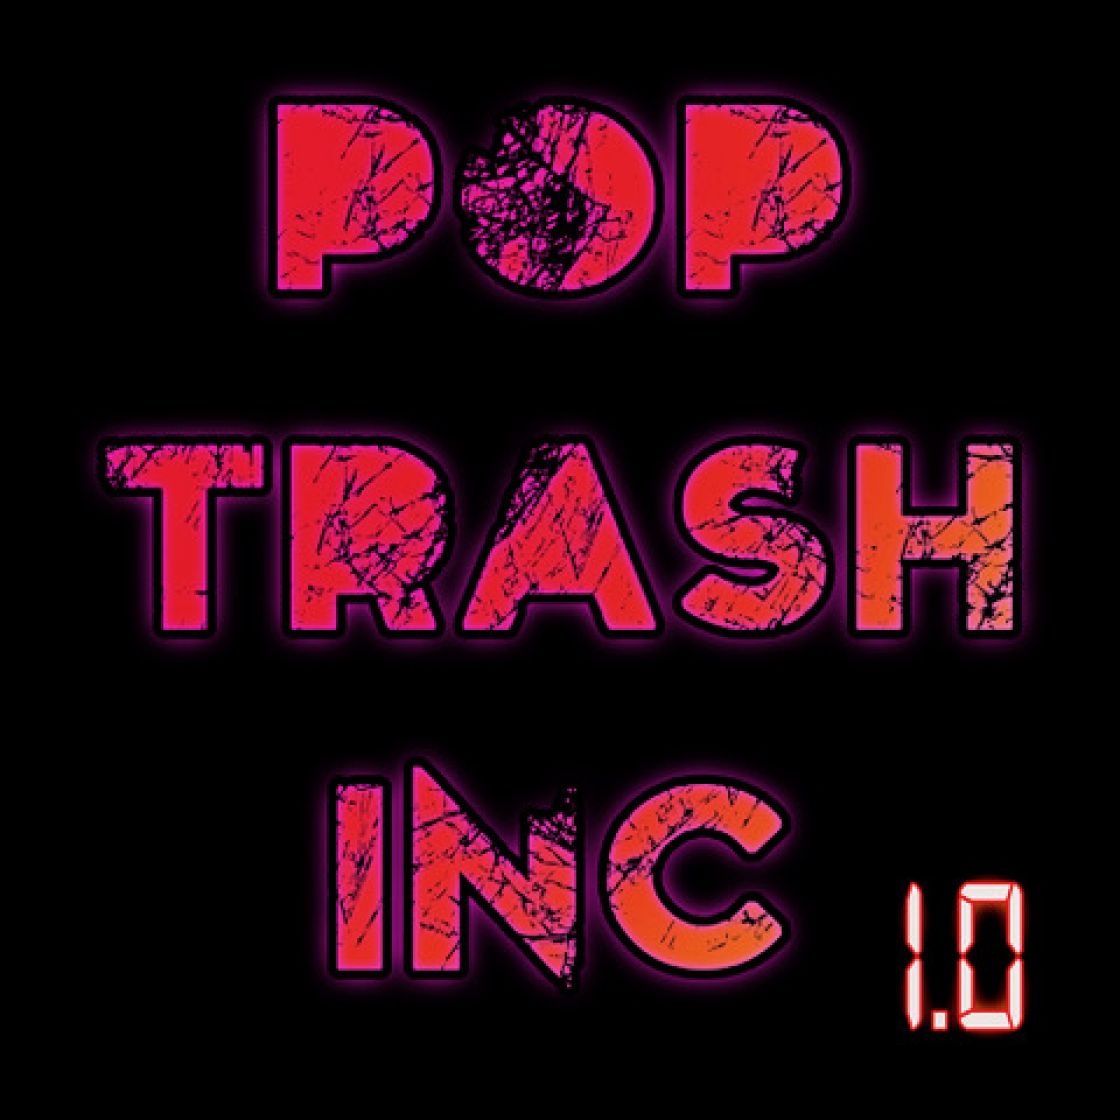 1.0 By Pop Trash Inc.